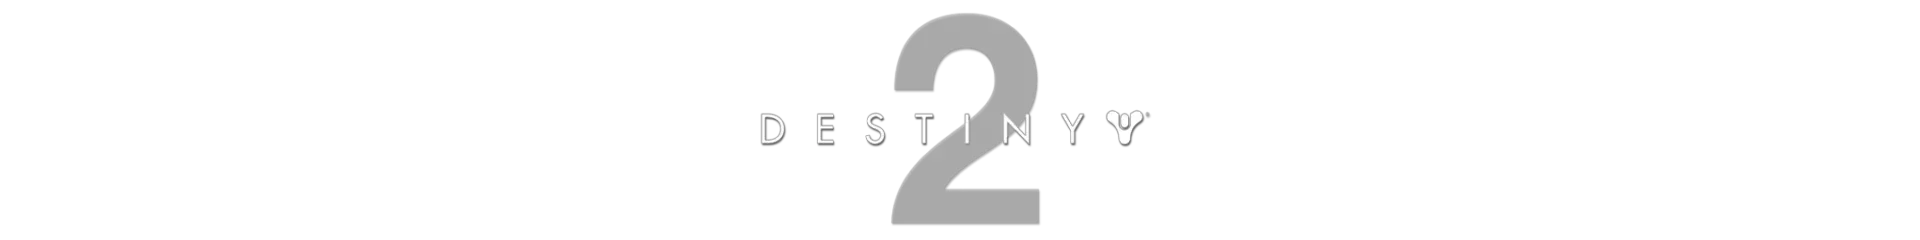 Destiny 2 Logo Png 4 Image Destiny 2 Logo Png Destiny 2 Logo Png